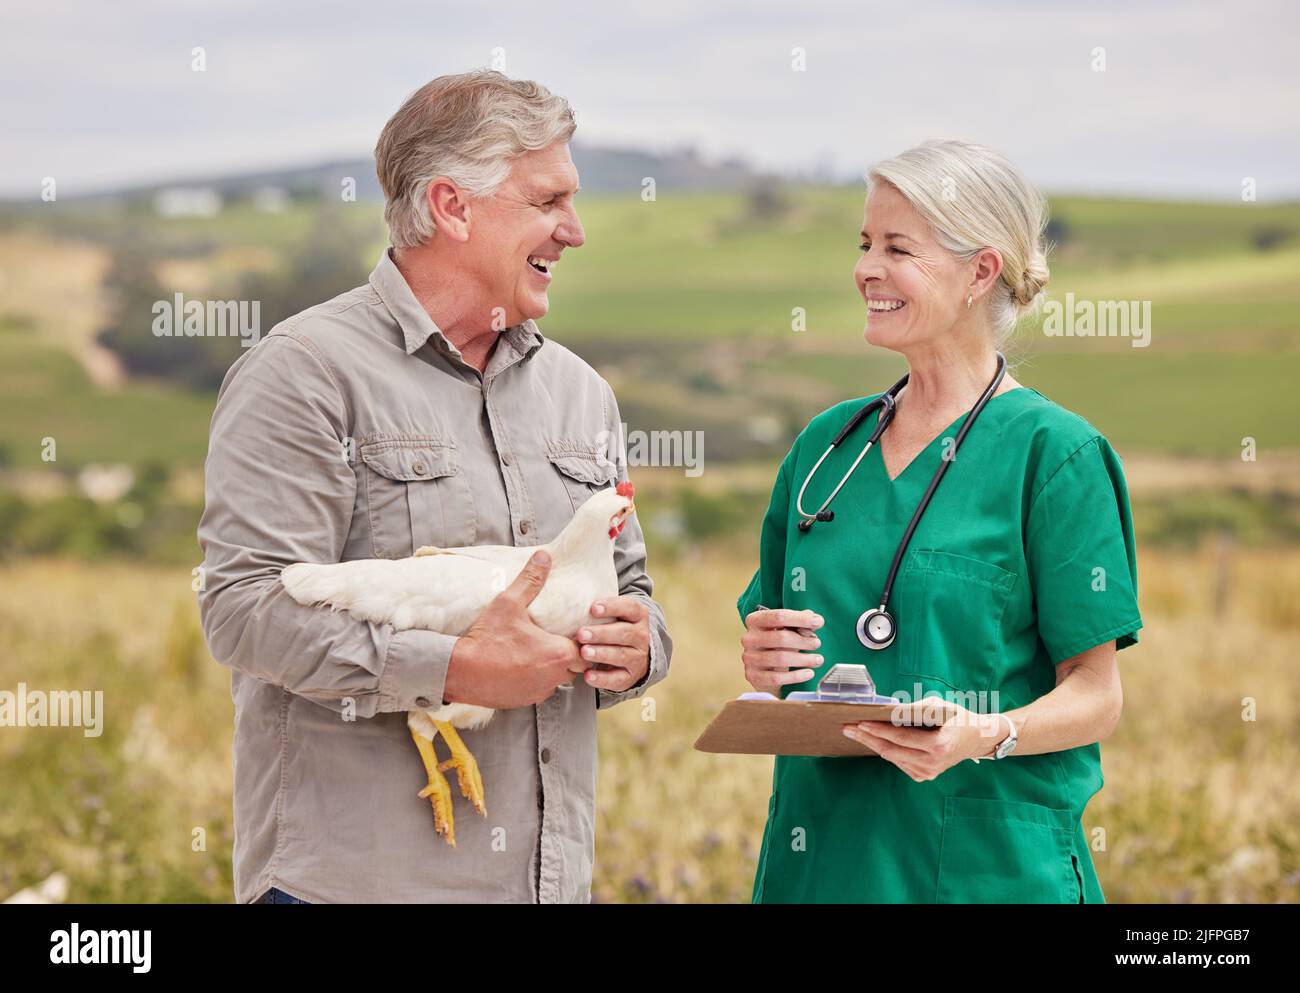 Beratung über die richtige Pflege und Behandlung der Vögel. Aufnahme eines Mannes, der auf einer Geflügelfarm ein Gespräch mit einem Tierarzt geführt hat. Stockfoto